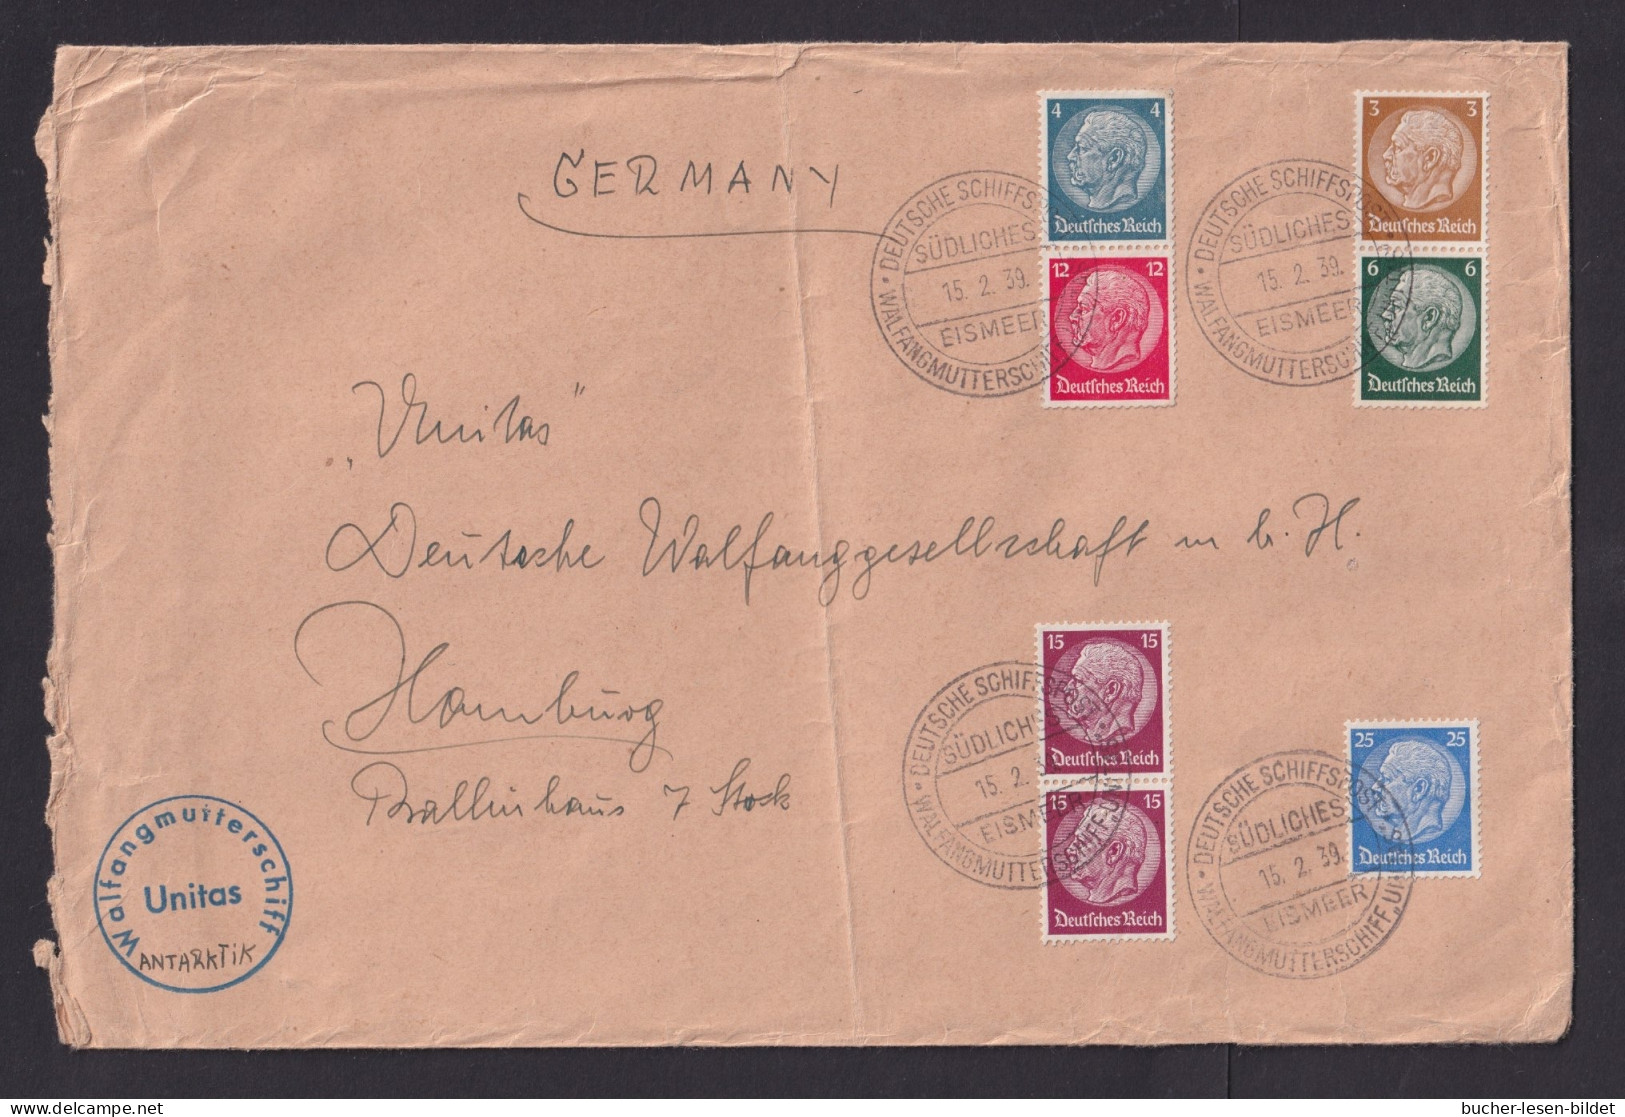 1939 - Bedarfsbrief Mit Schiffstempel "Walfangflotte Südliches Eismeer Unitas" - SEHR  SELTEN - Balene